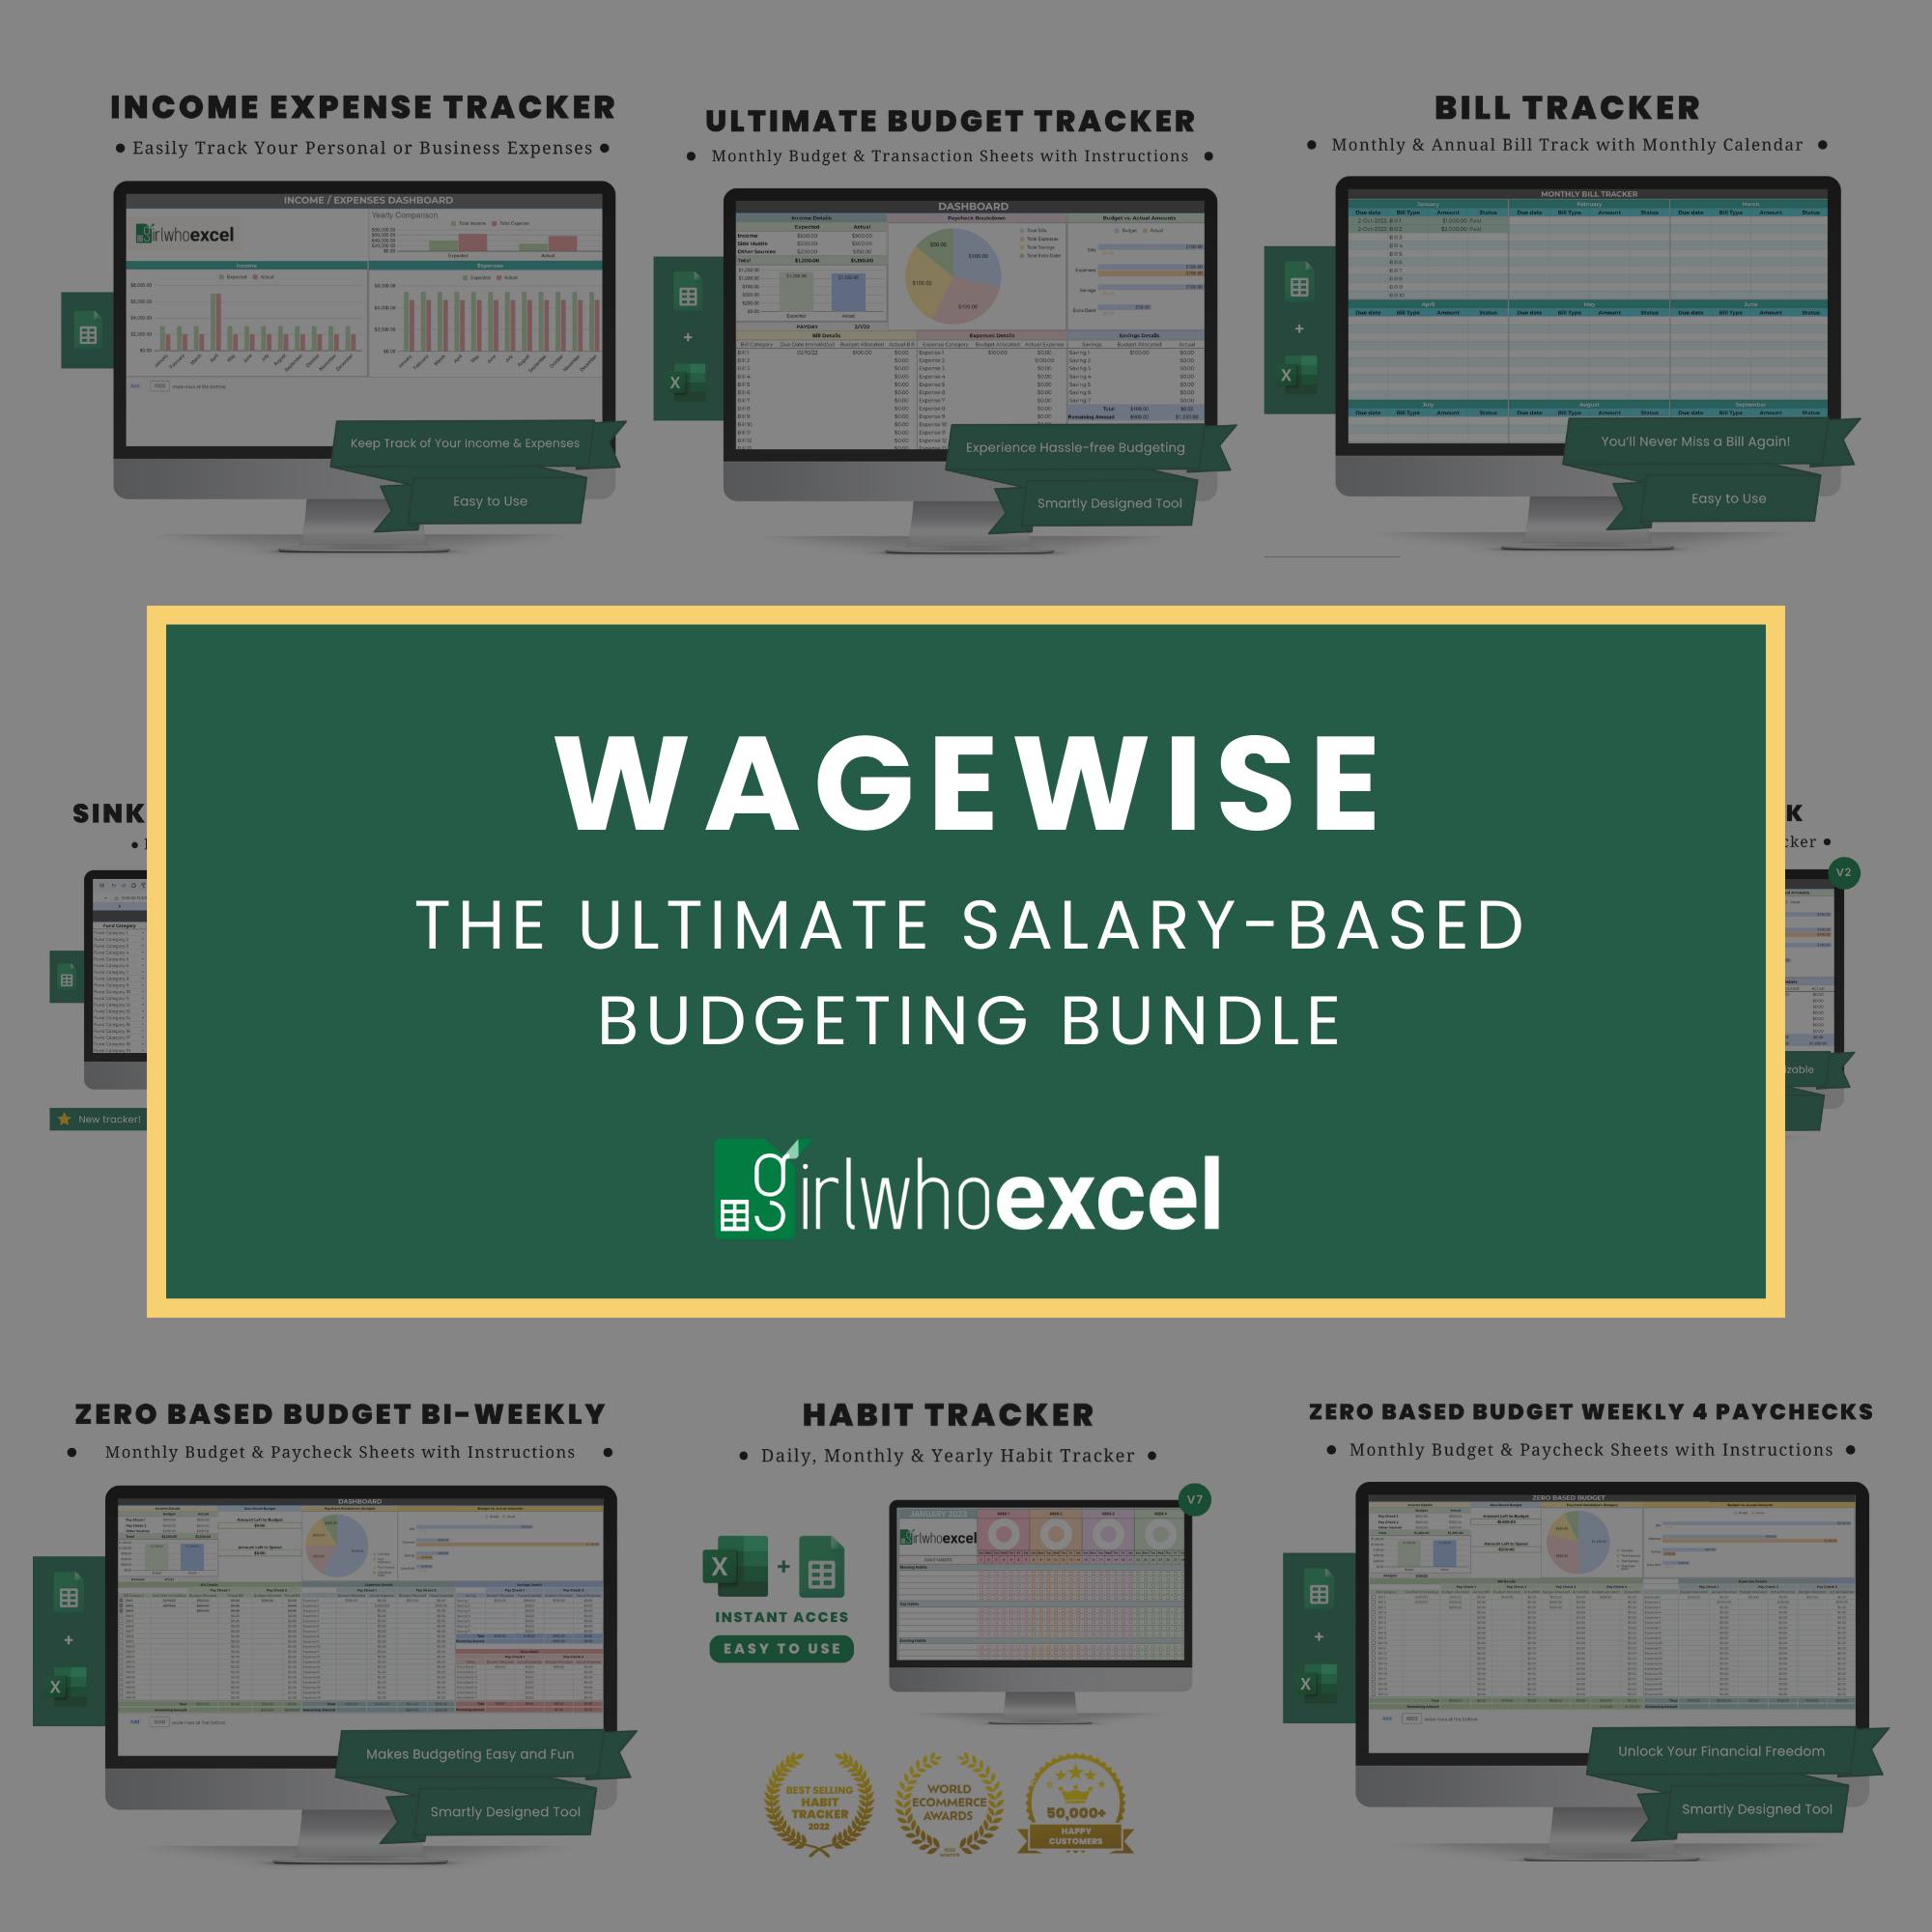 WageWise: The Ultimate Salary-Based Budgeting Bundle